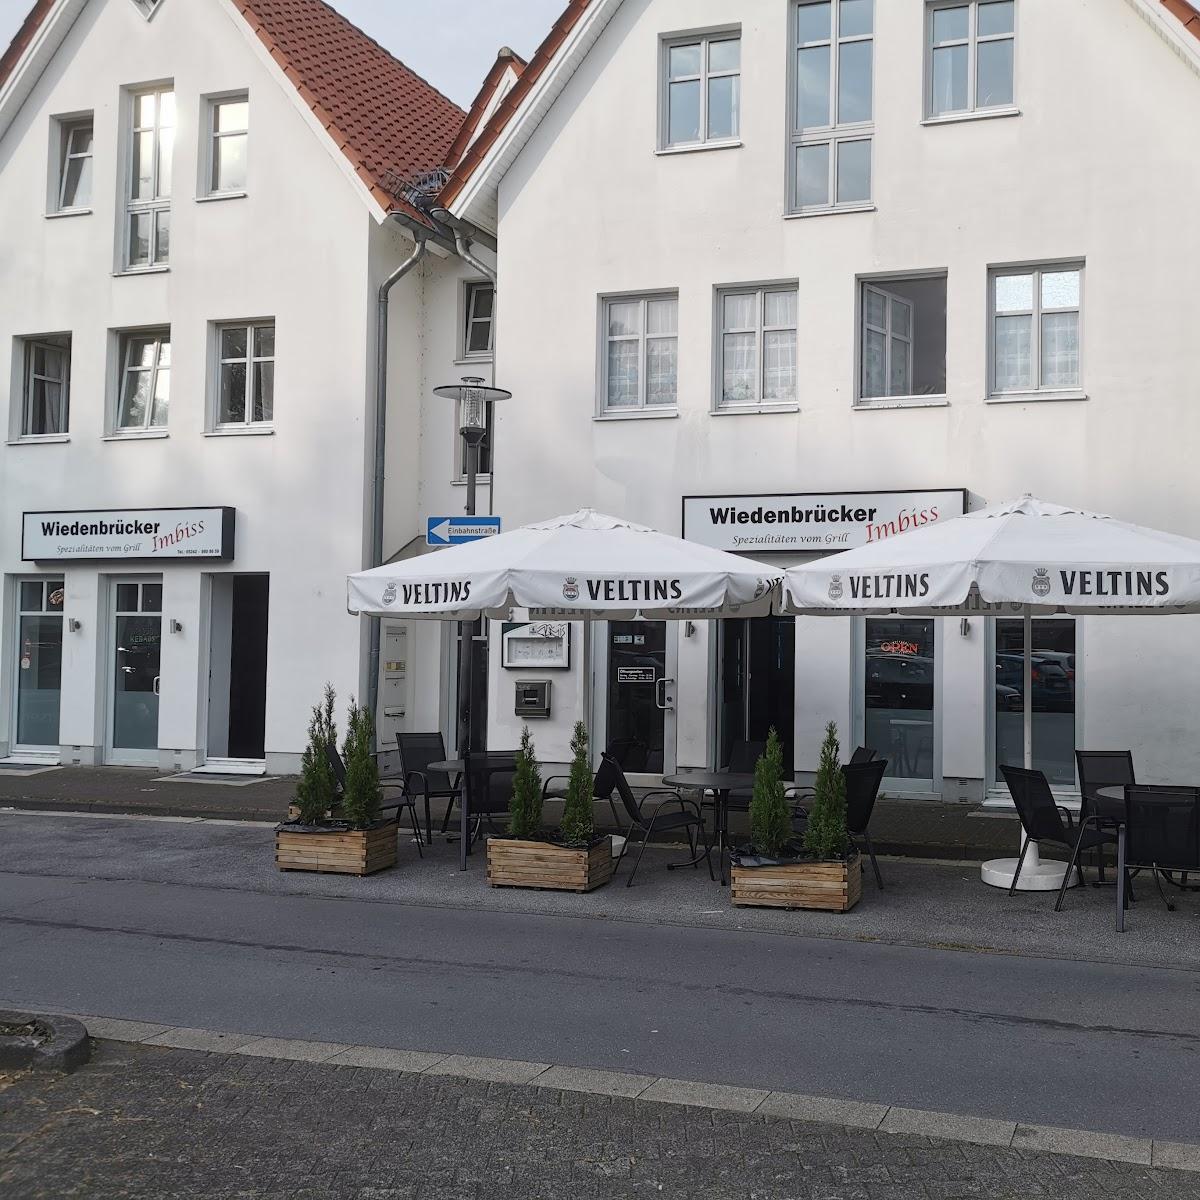 Restaurant "????" in Rheda-Wiedenbrück